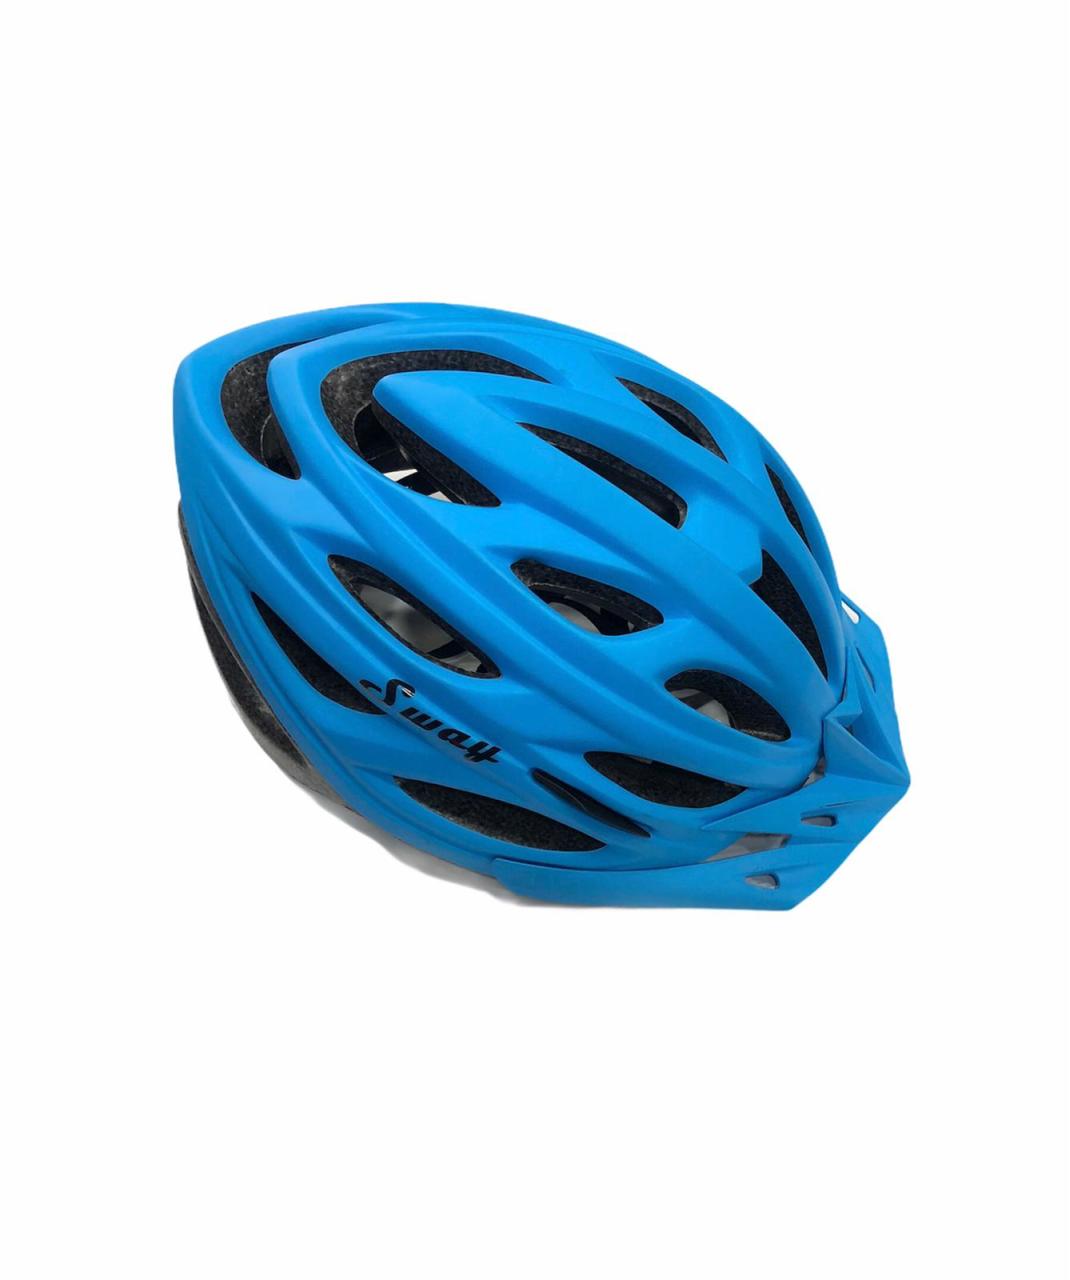 Bisiklet Kaskı Mavi Sway N7 Yetişkin